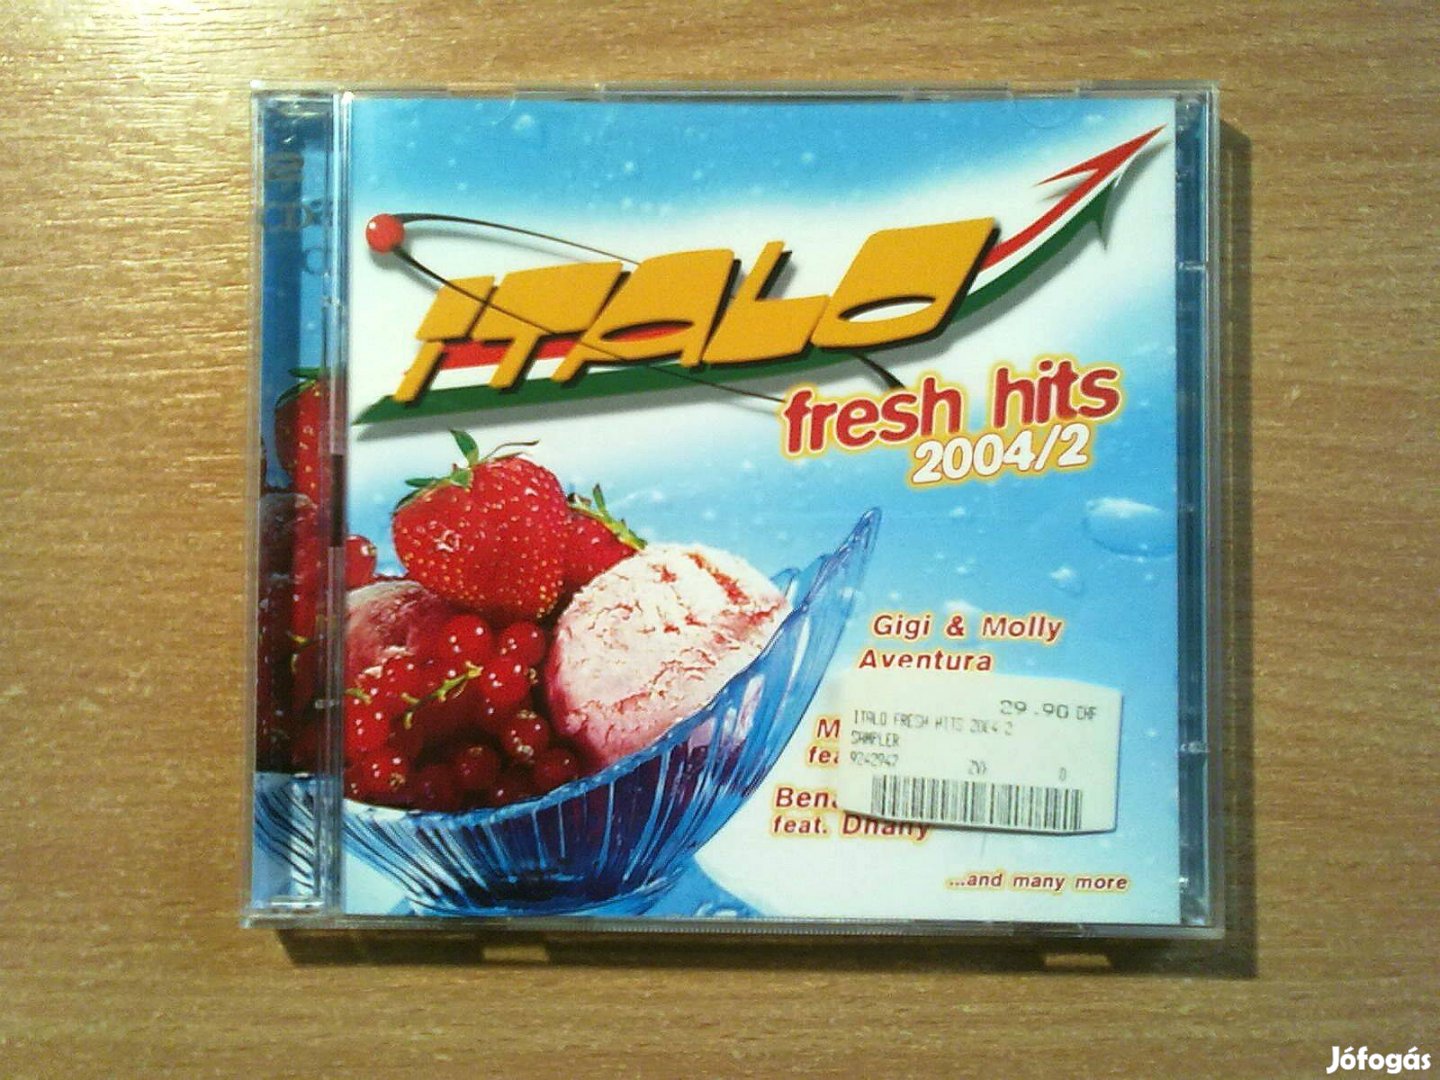 Italo Fresh Hits 2004/2 (2 CD)